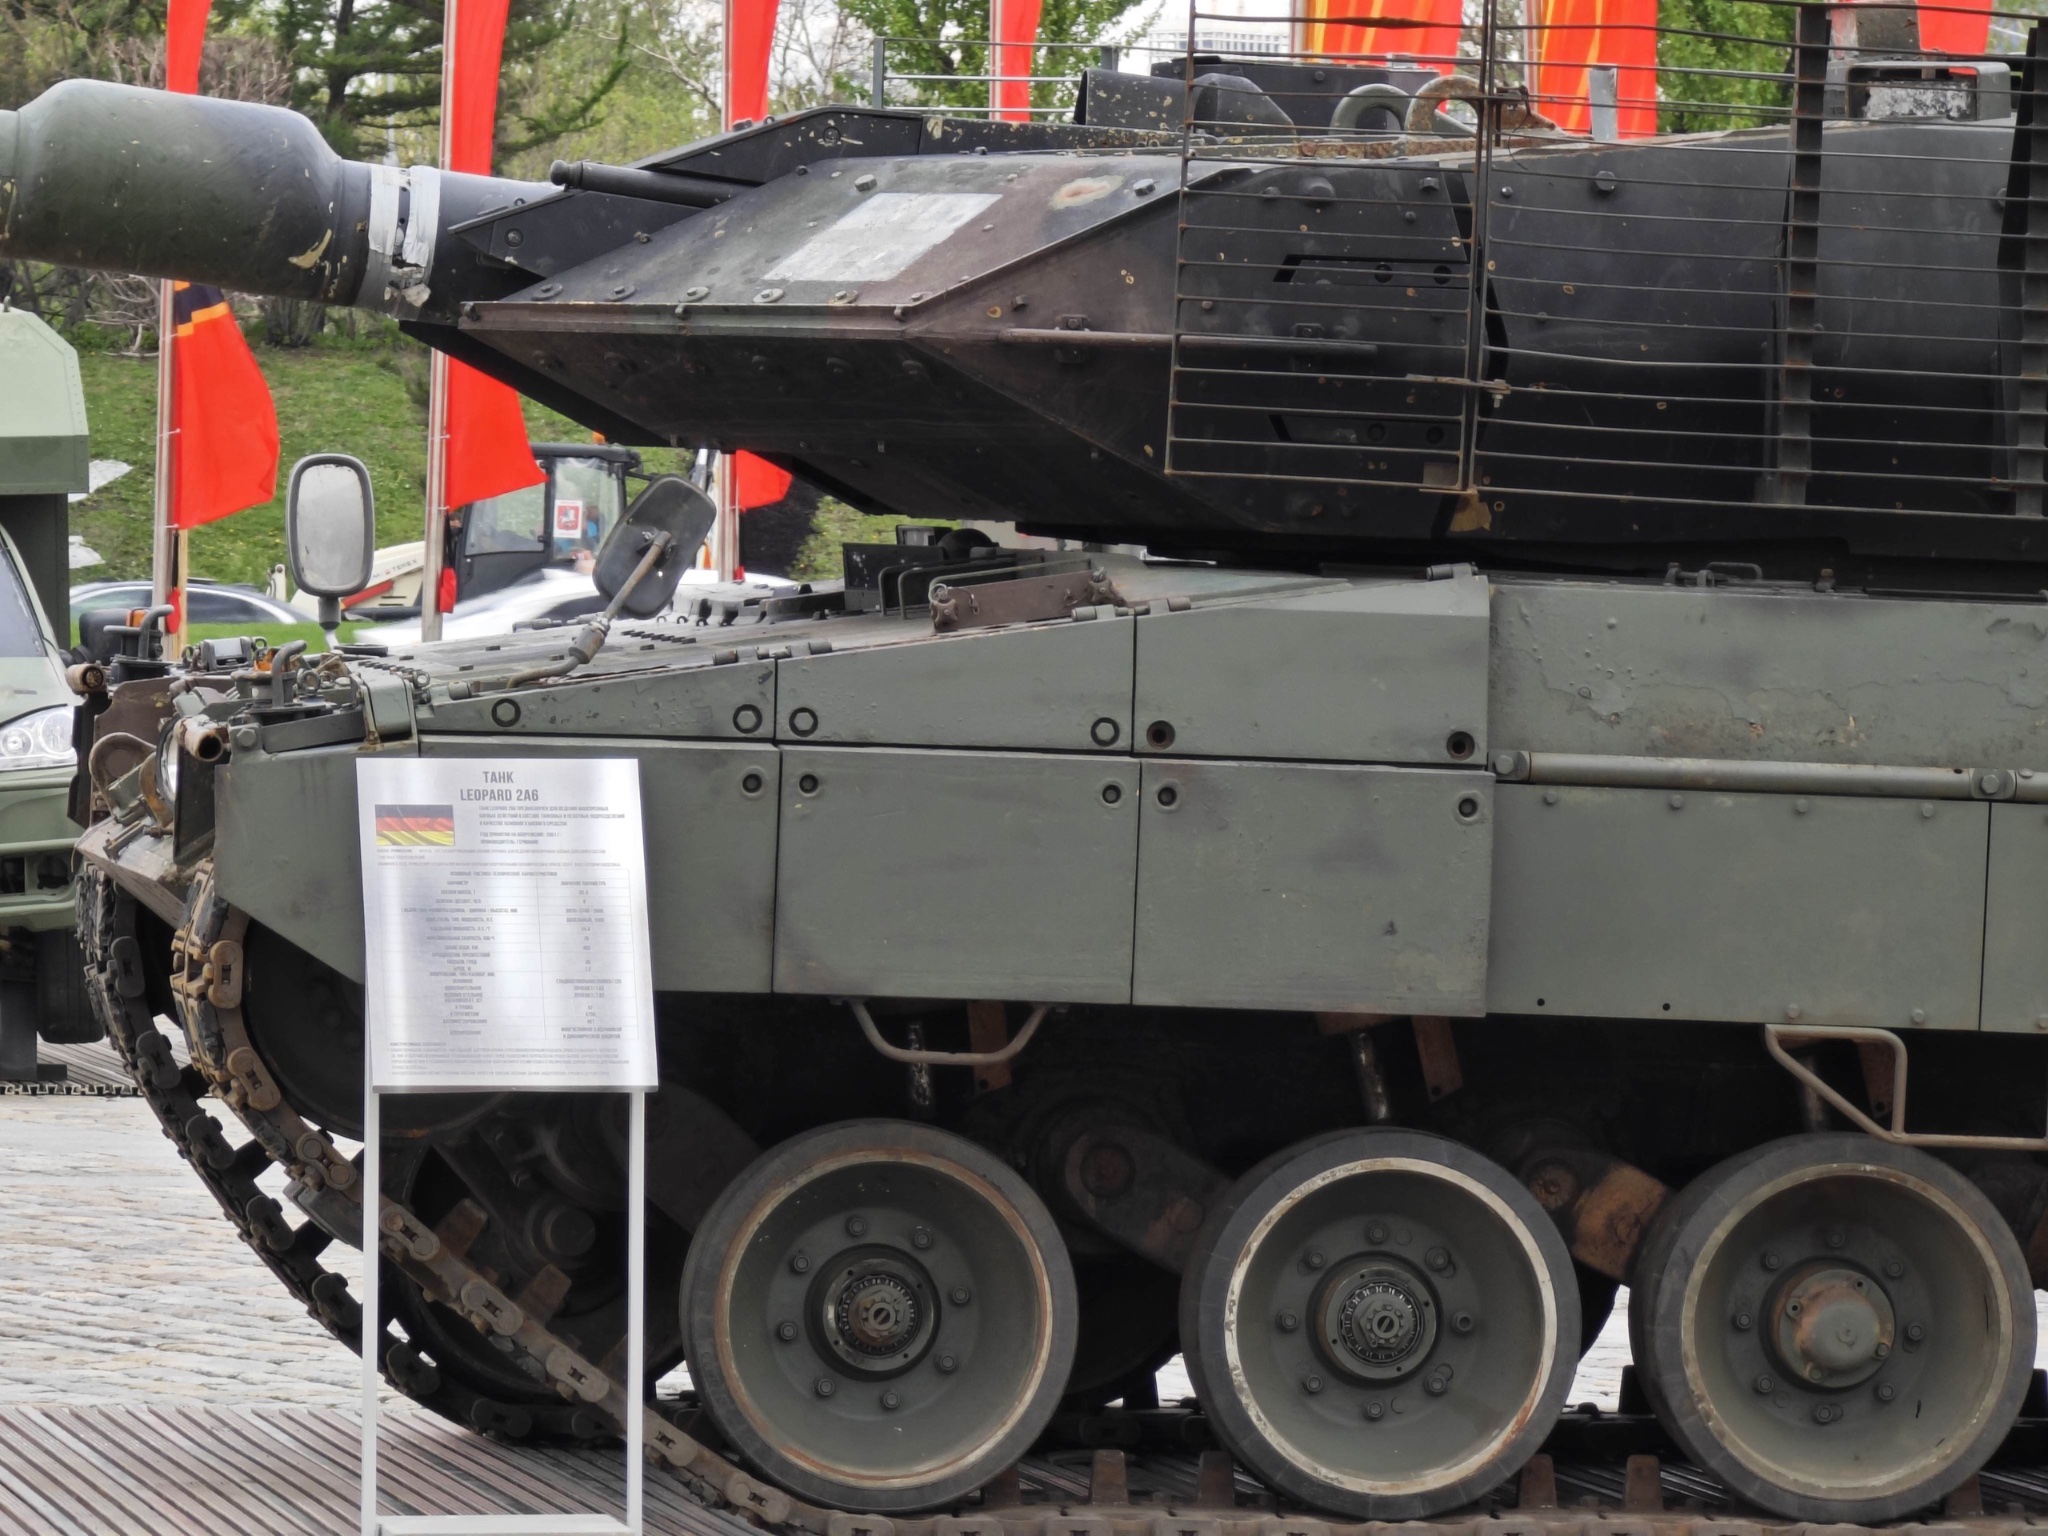  دبابة Leopard II في خدمة الجيش الاوكراني في الحرب الروسية - الاوكرانية  - صفحة 14 GMP8gyxWUAAoIAT?format=jpg&name=large